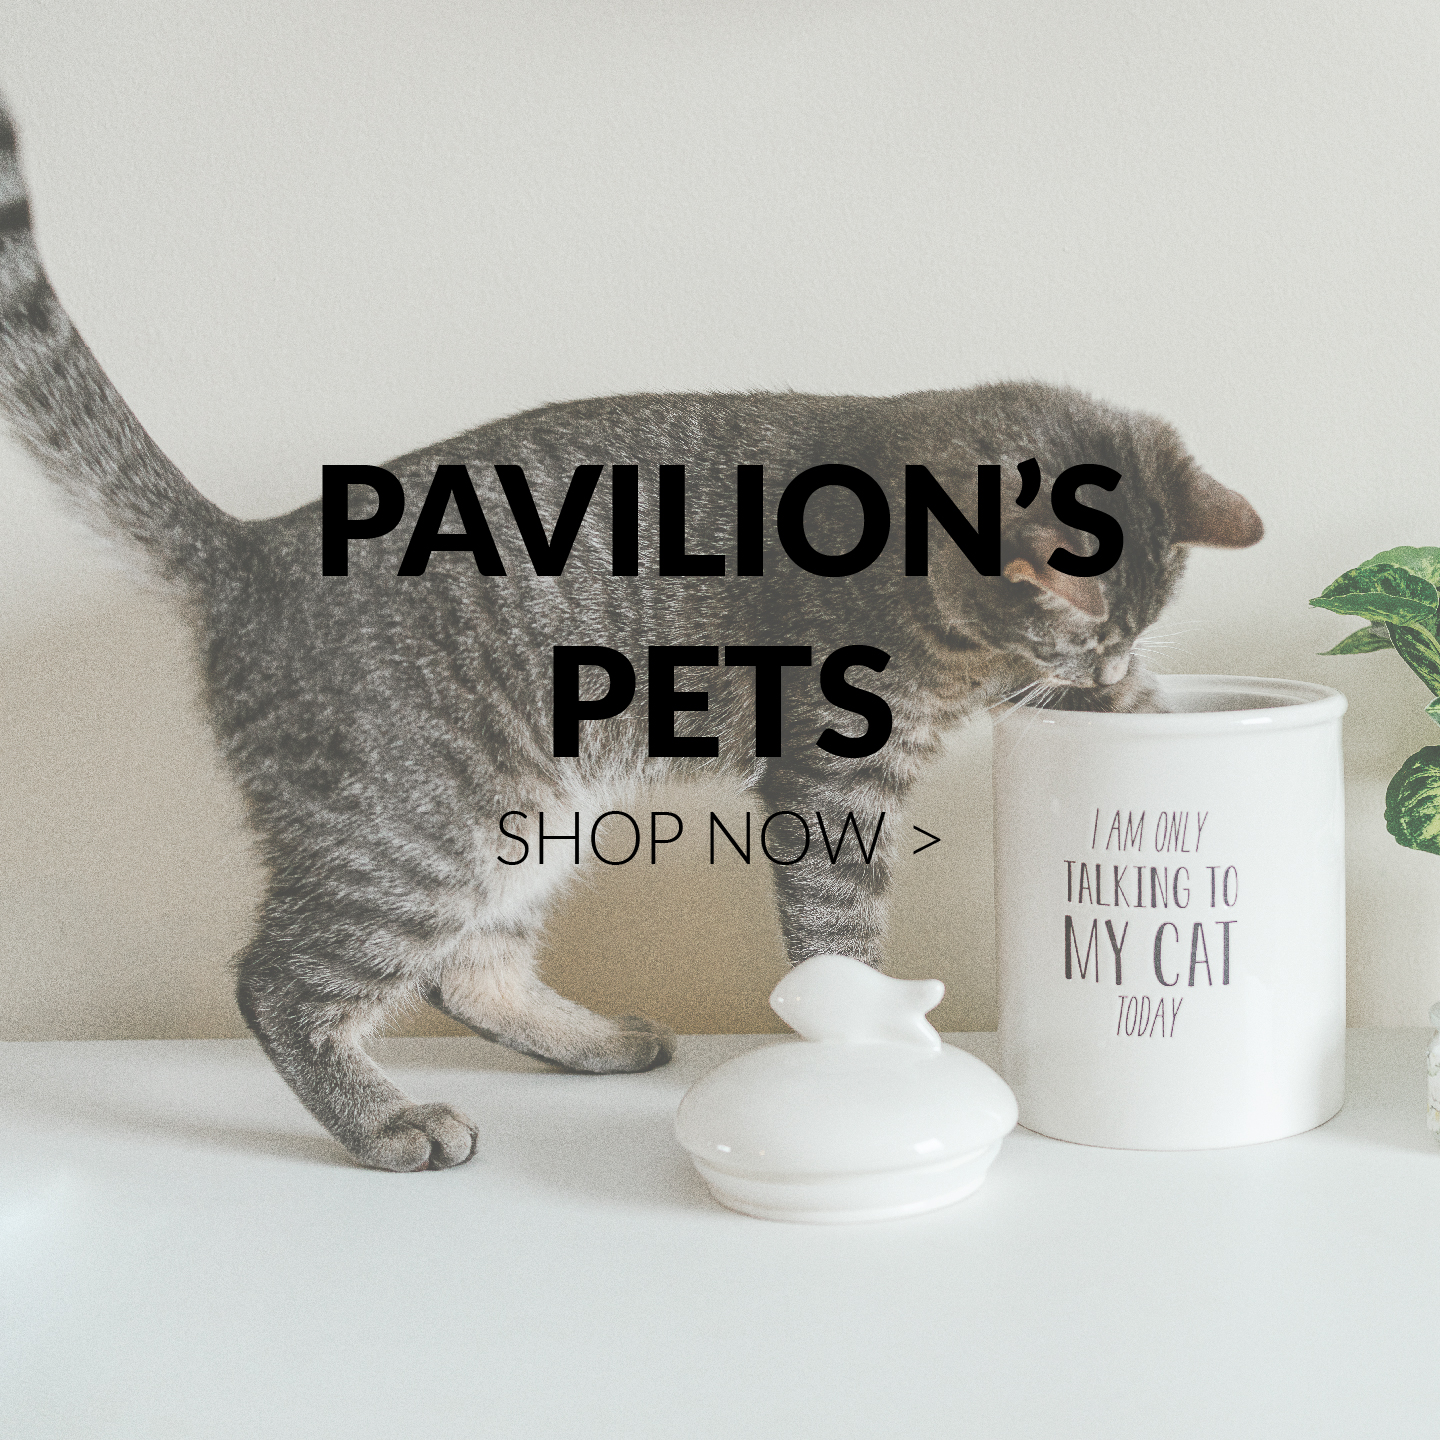 Pavilion's Pets